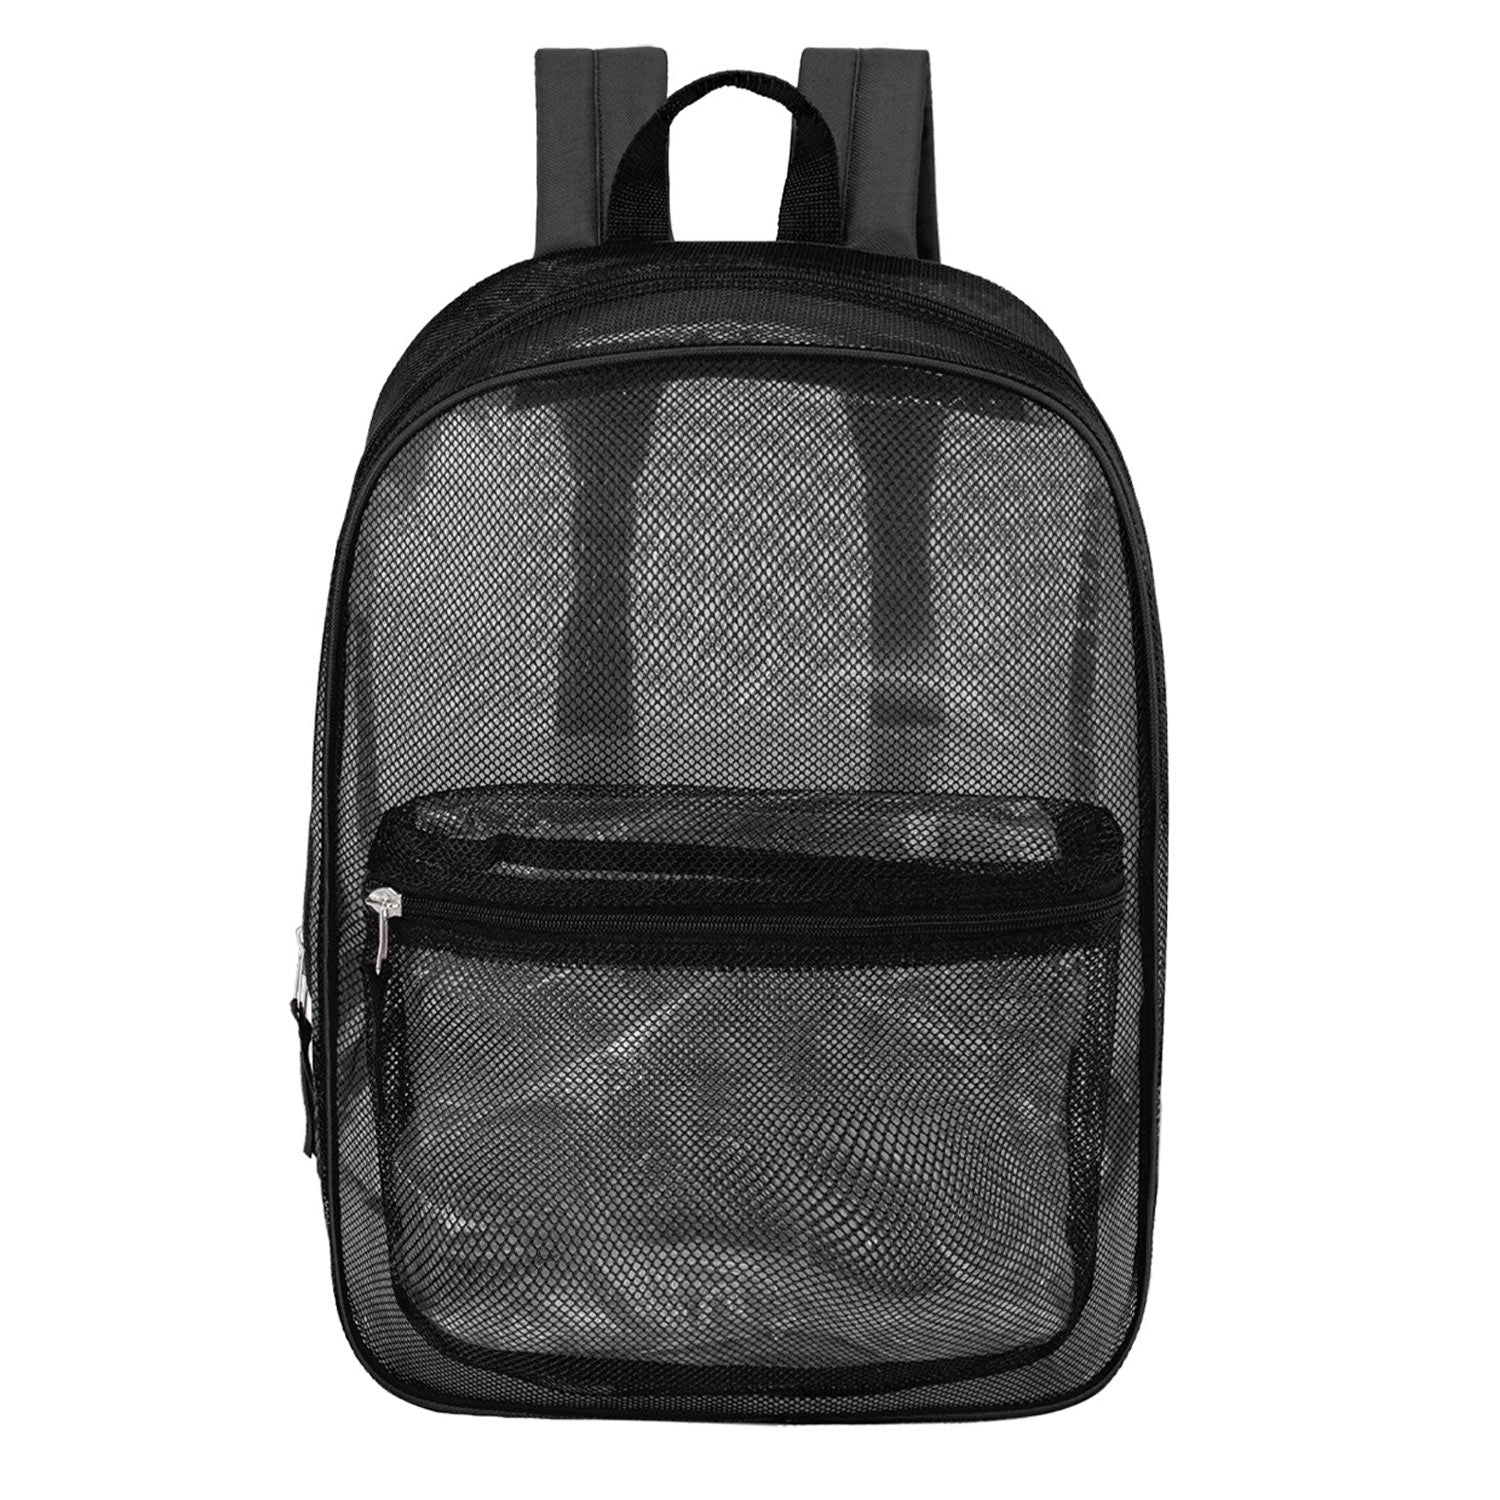 17" Wholesale Mesh Backpack in Black for School - Bulk Case of 24 Black Mesh Bookbags